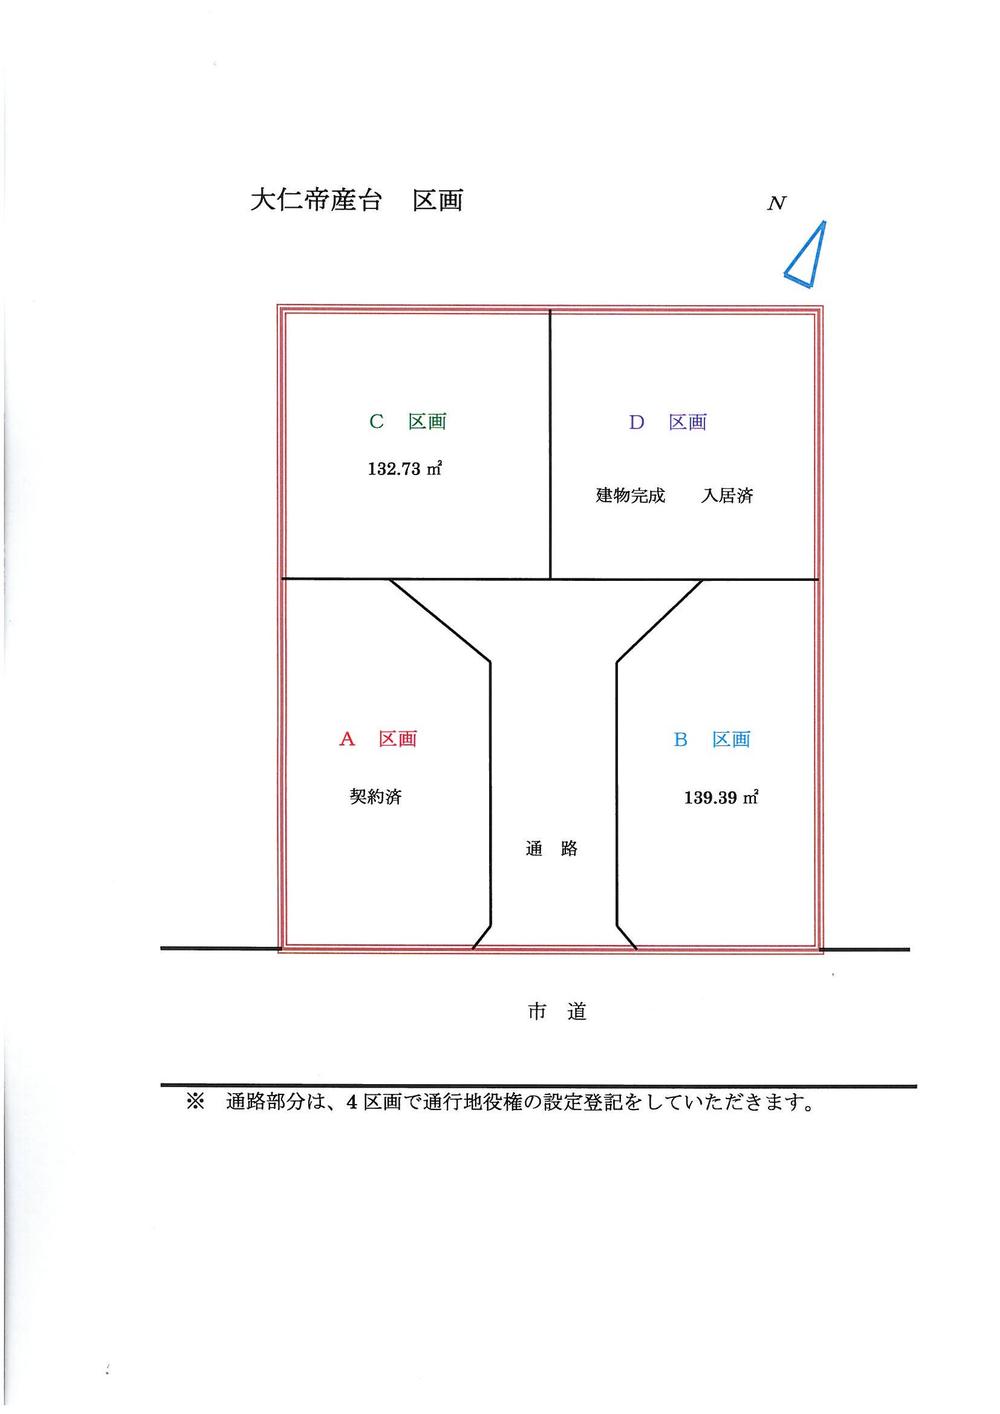 Compartment figure. 24.5 million yen, 3LDK, Land area 152.94 sq m , Building area 82.8 sq m